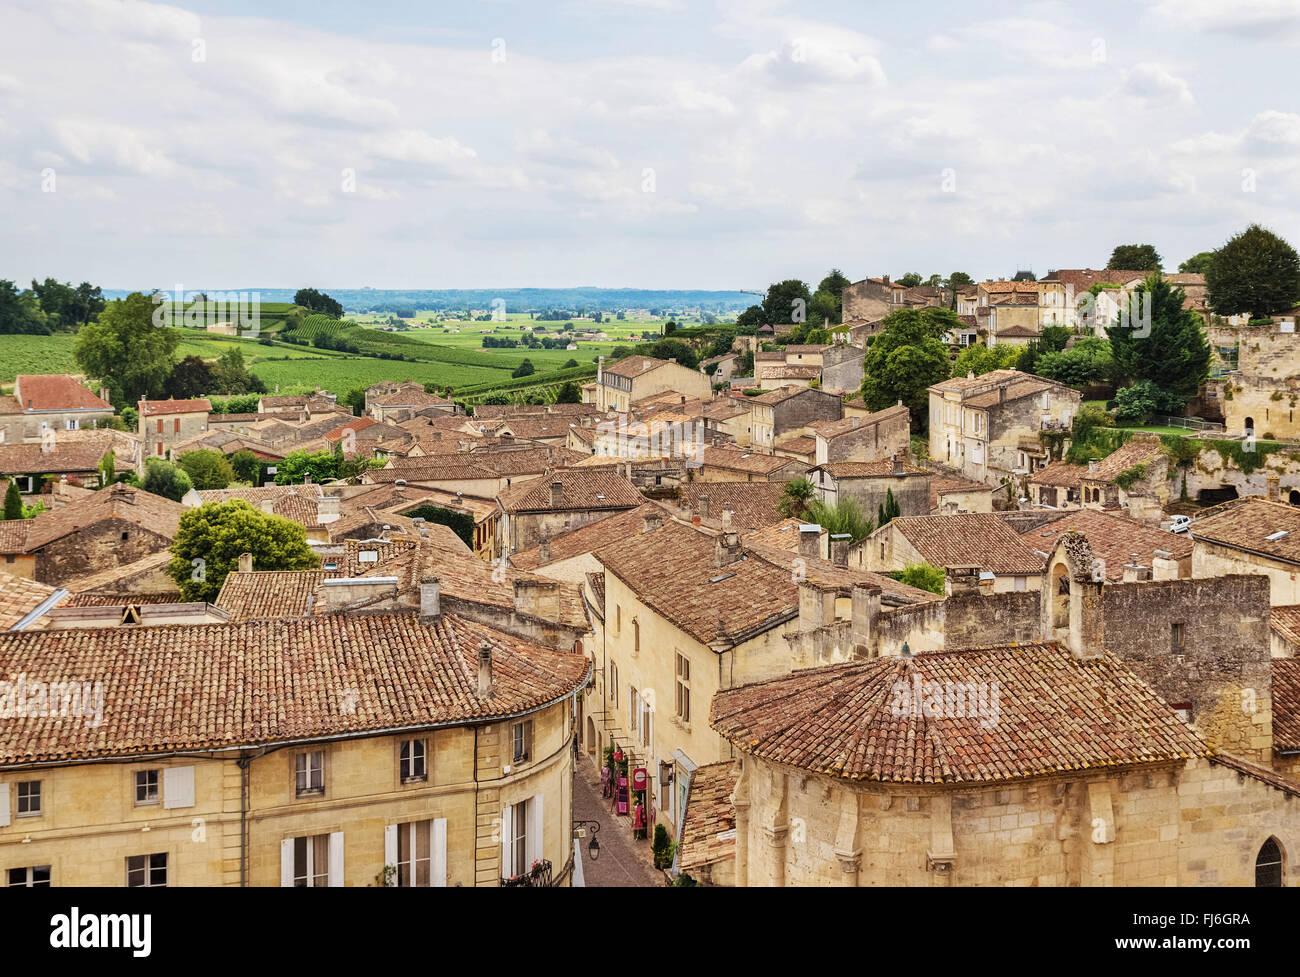 Alte Stadt von Saint-Emilion, eines der wichtigsten roten Wein Gebiete von Bordeaux, Frankreich. Stockfoto